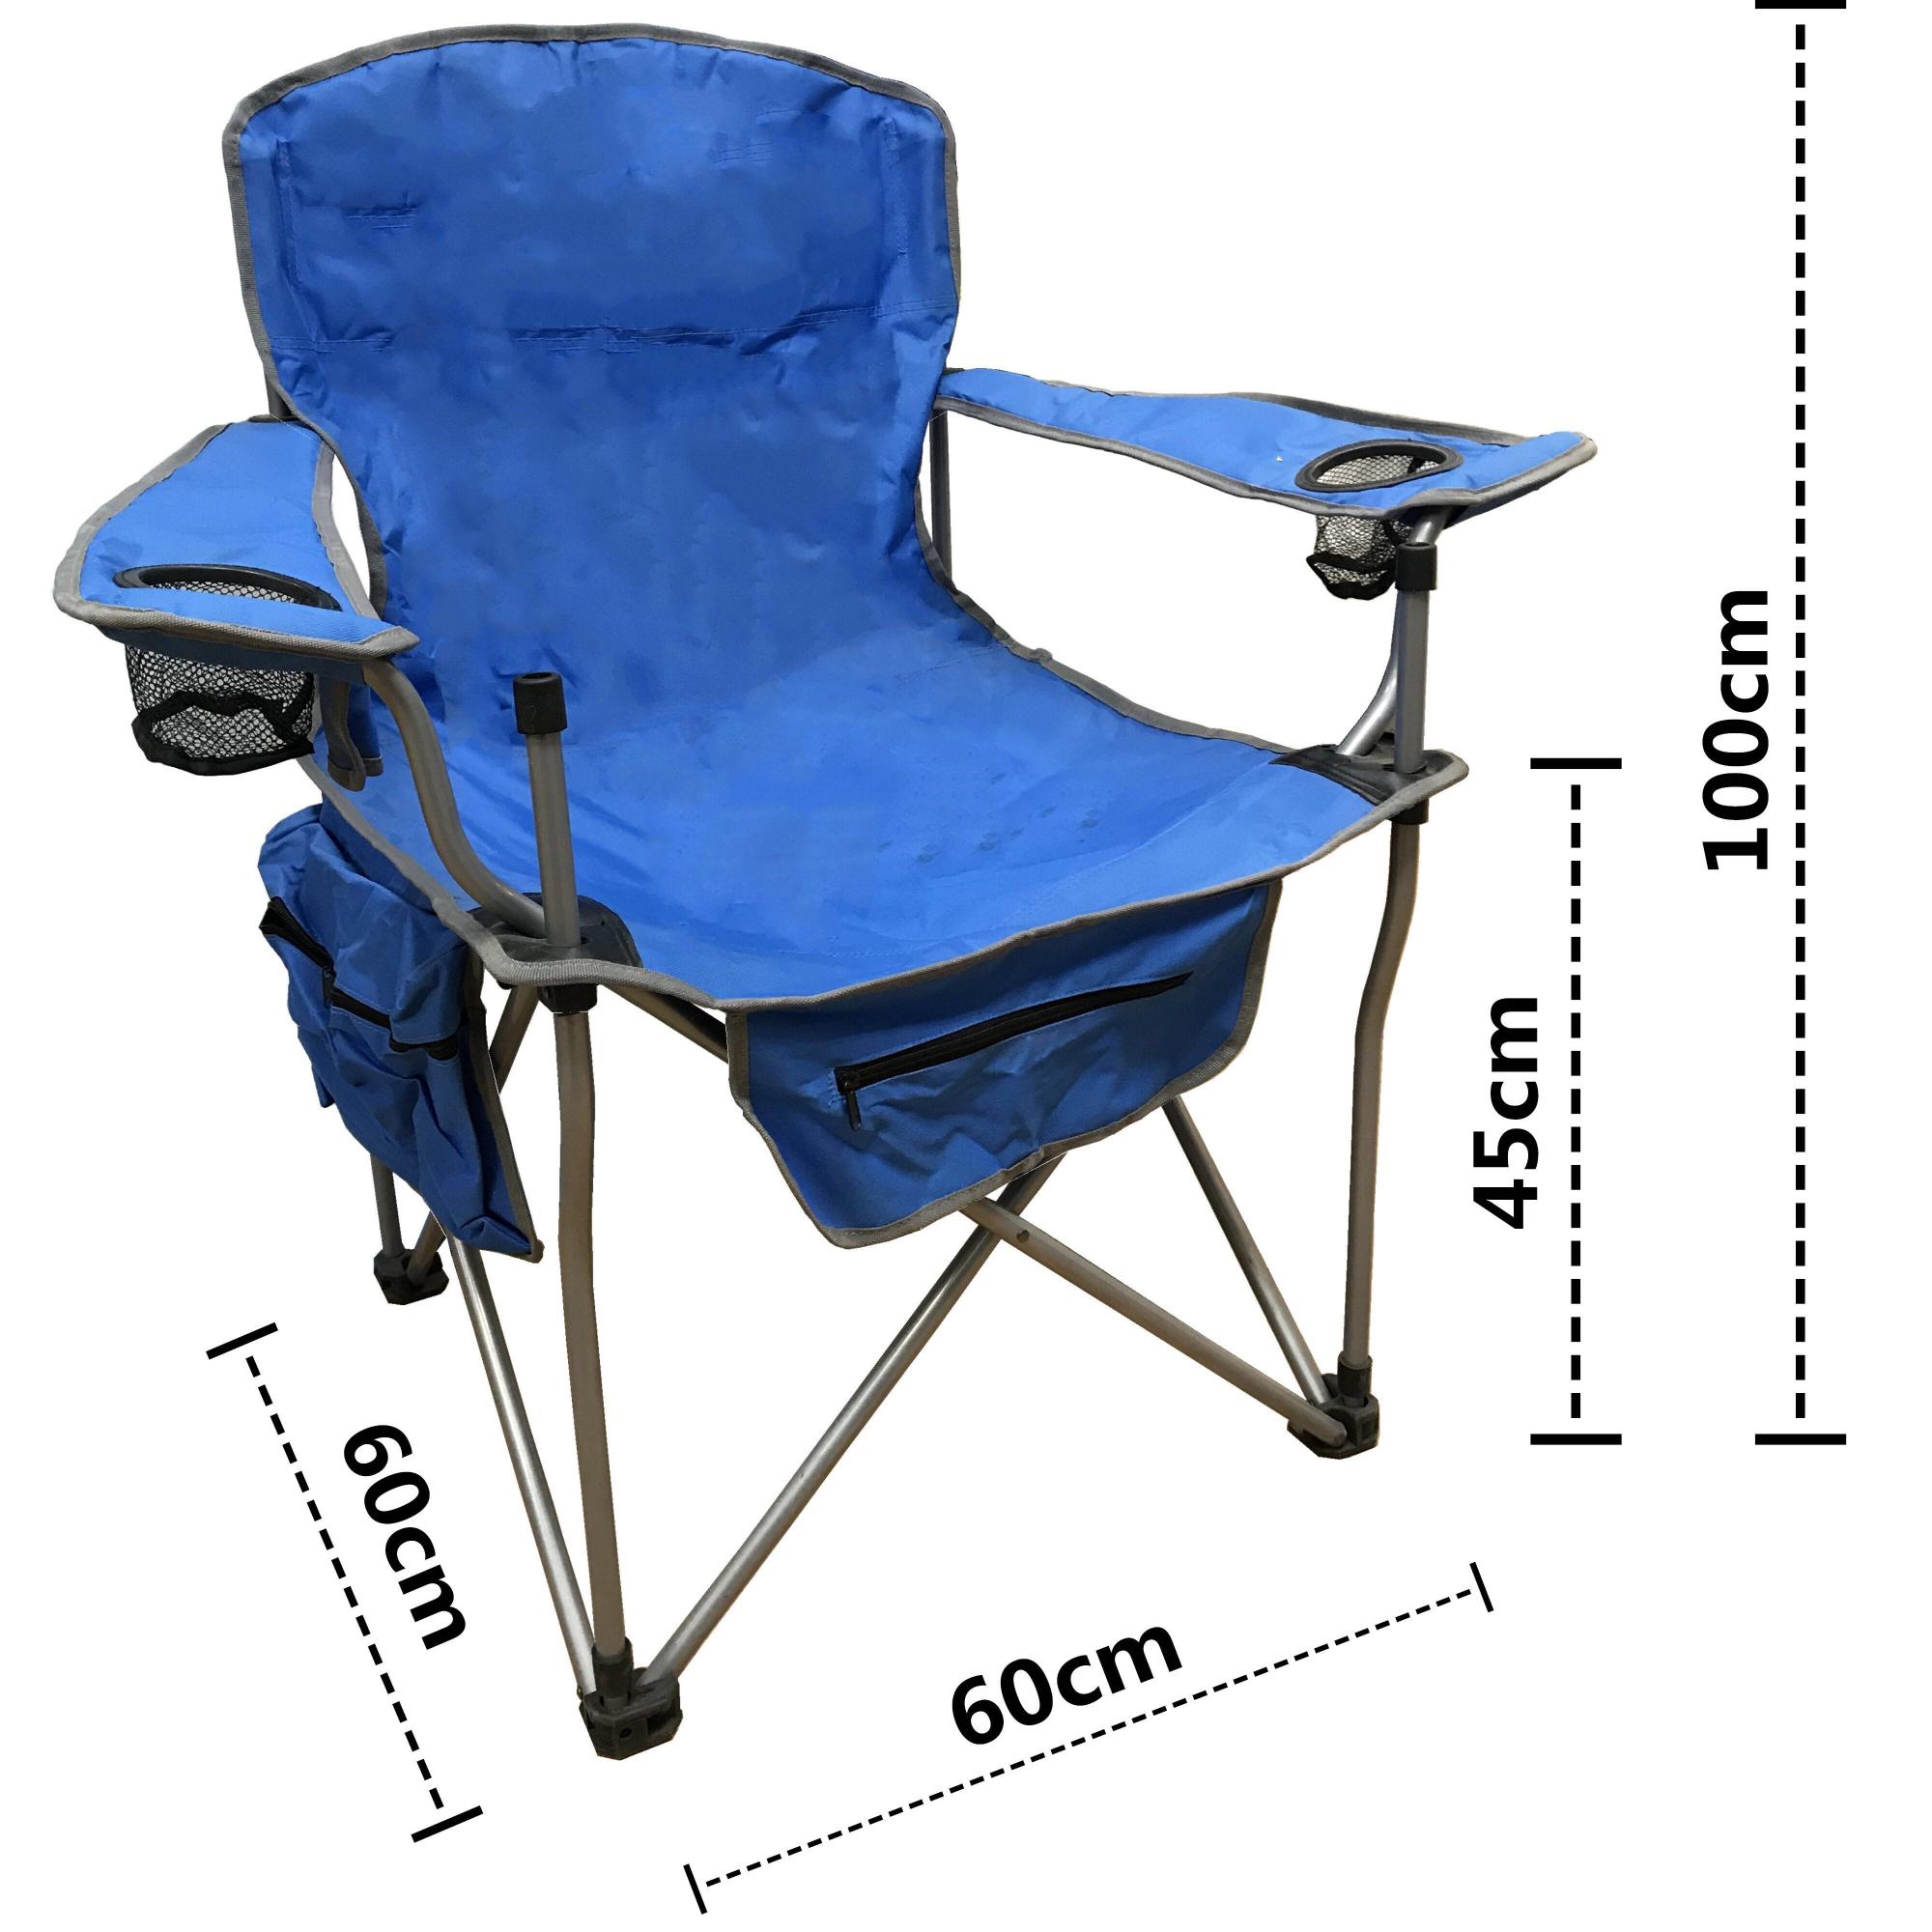 Кресло туристическое подлокотниками. Кресло складное COOLWALK 5660. Кресло складное к 302, 52 х 56 х 90 см, цвет Blue. Стул COOLWALK рыболовный. Mifine 55071 кресло.